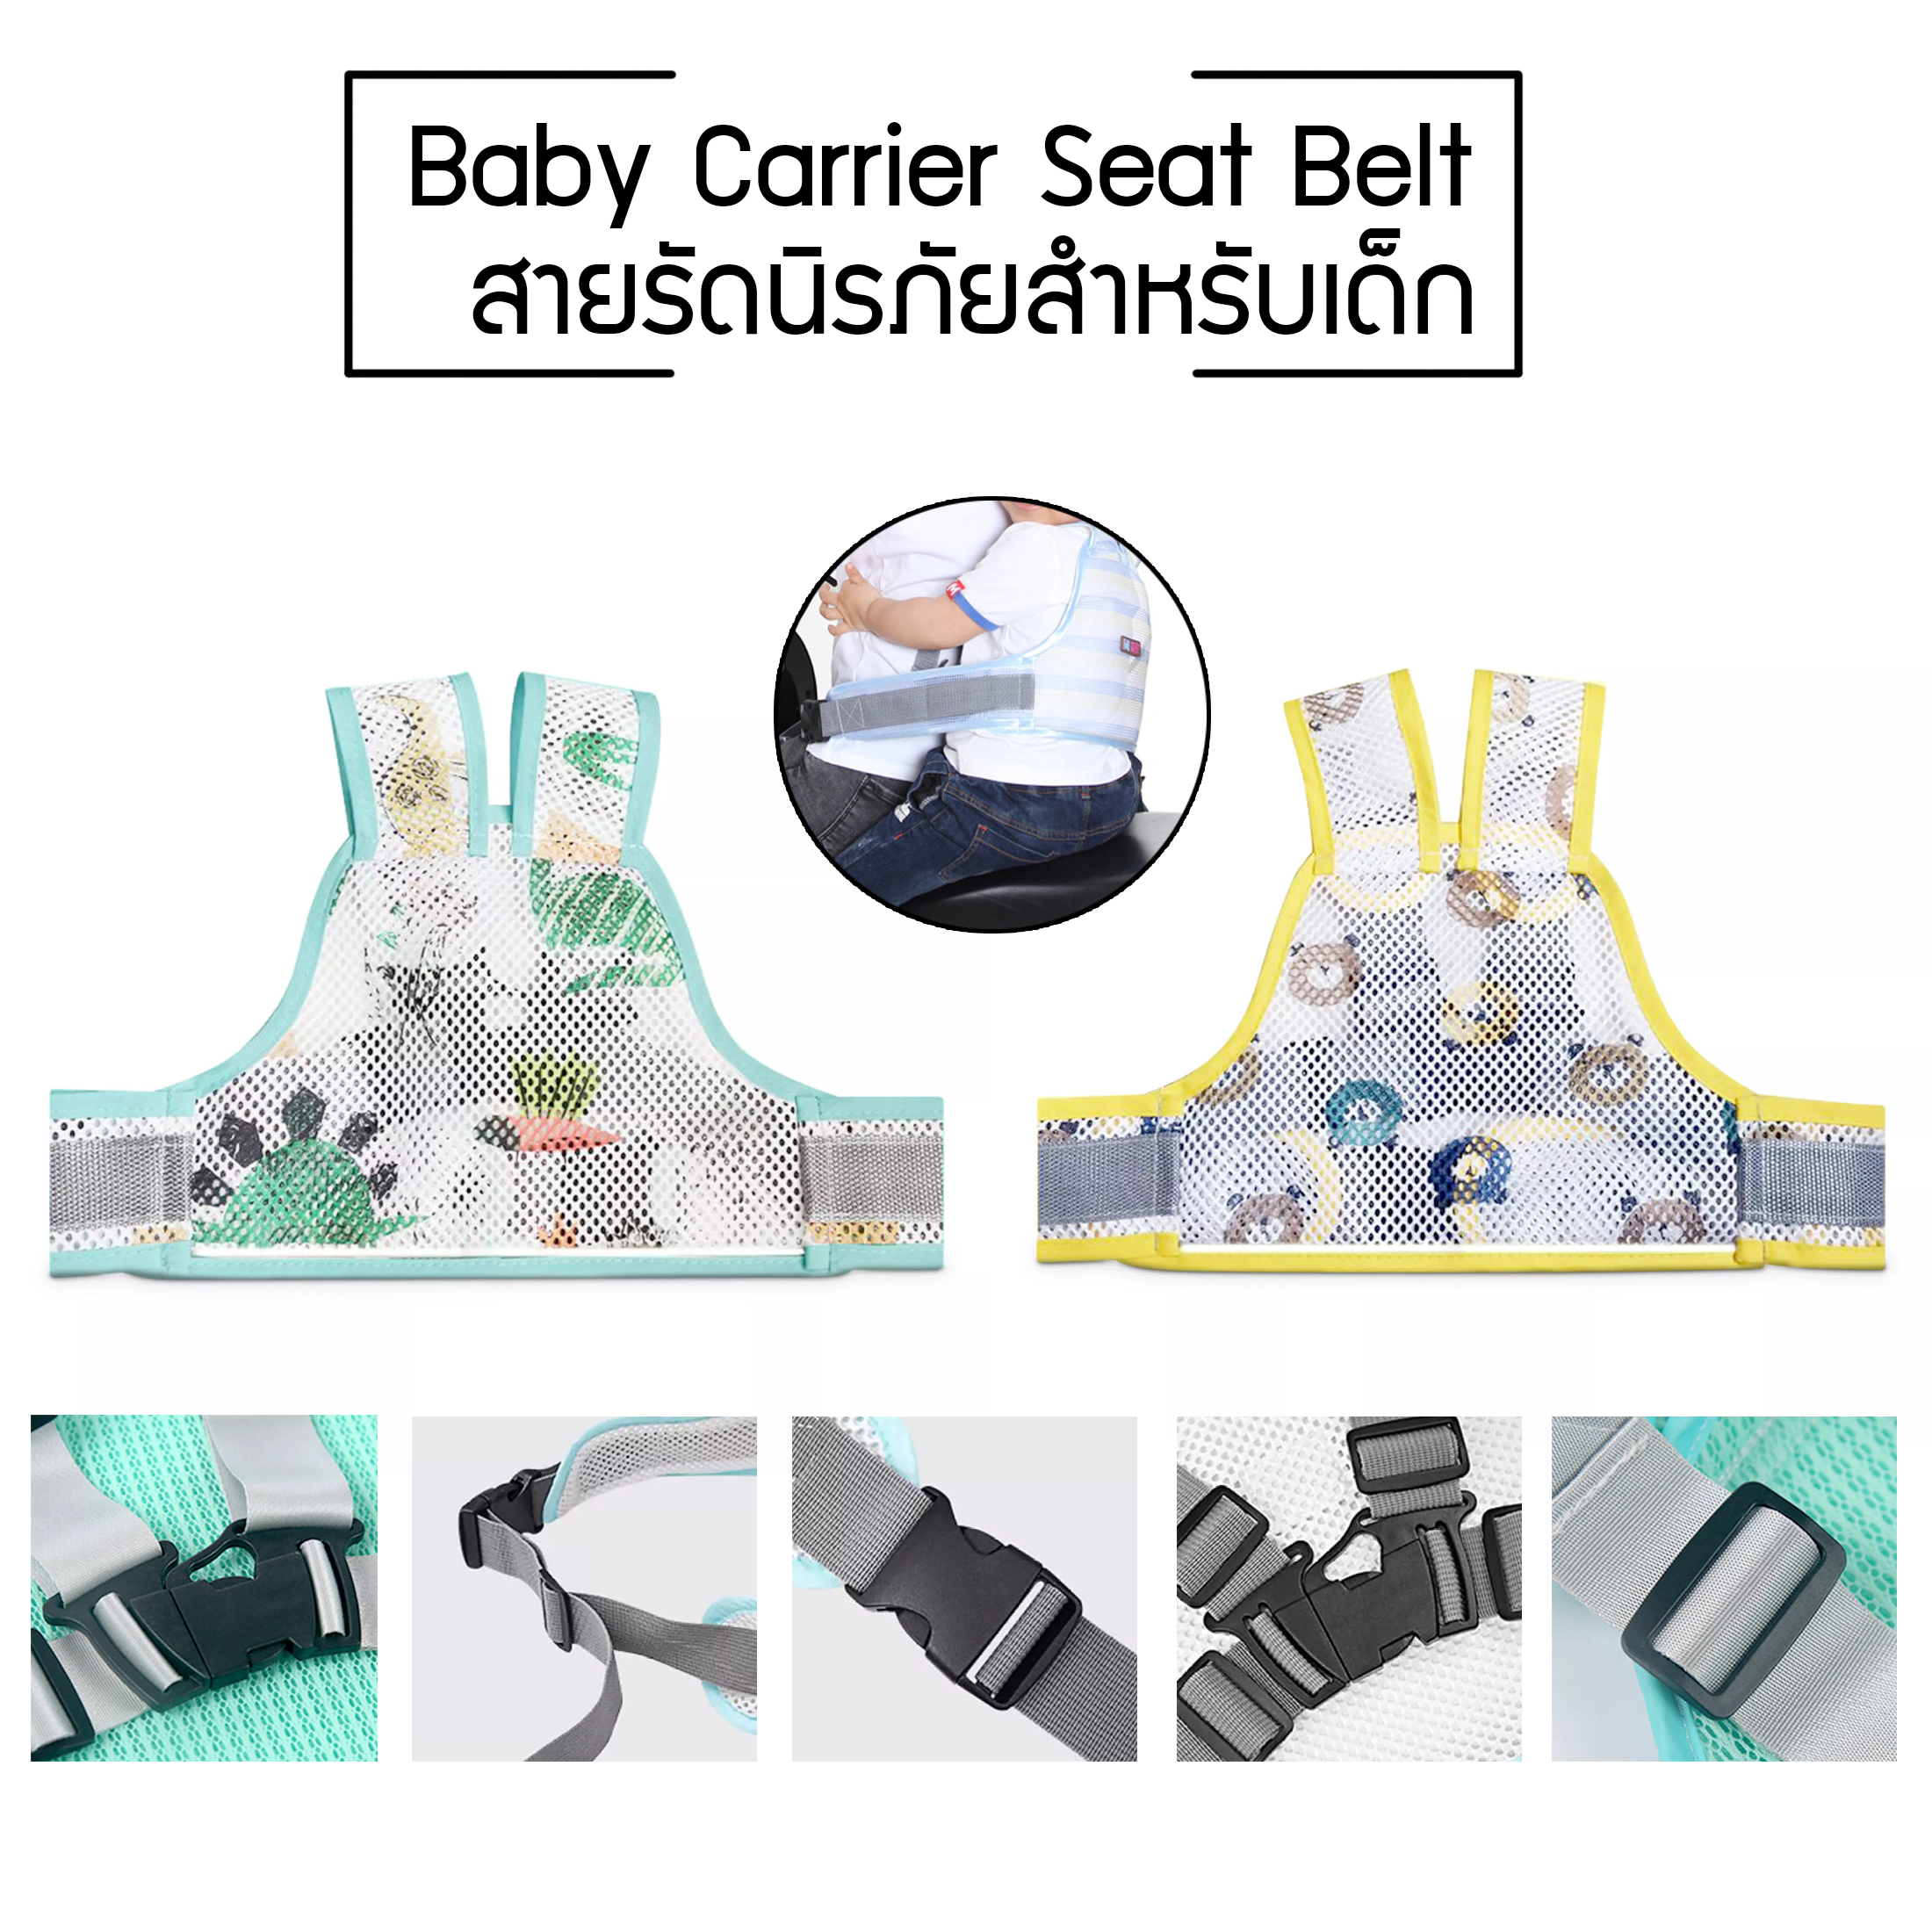 สายรัดนิรภัยเด็ก สำหรับเด็ก เข็มขัดนิรภัยเด็ก สายรัดเอวกันเด็กตก ป้องกันเด็กตกรถ เพื่อความปลอดภัย Baby Carrier Seat Belt ร้านOliver Bazaar